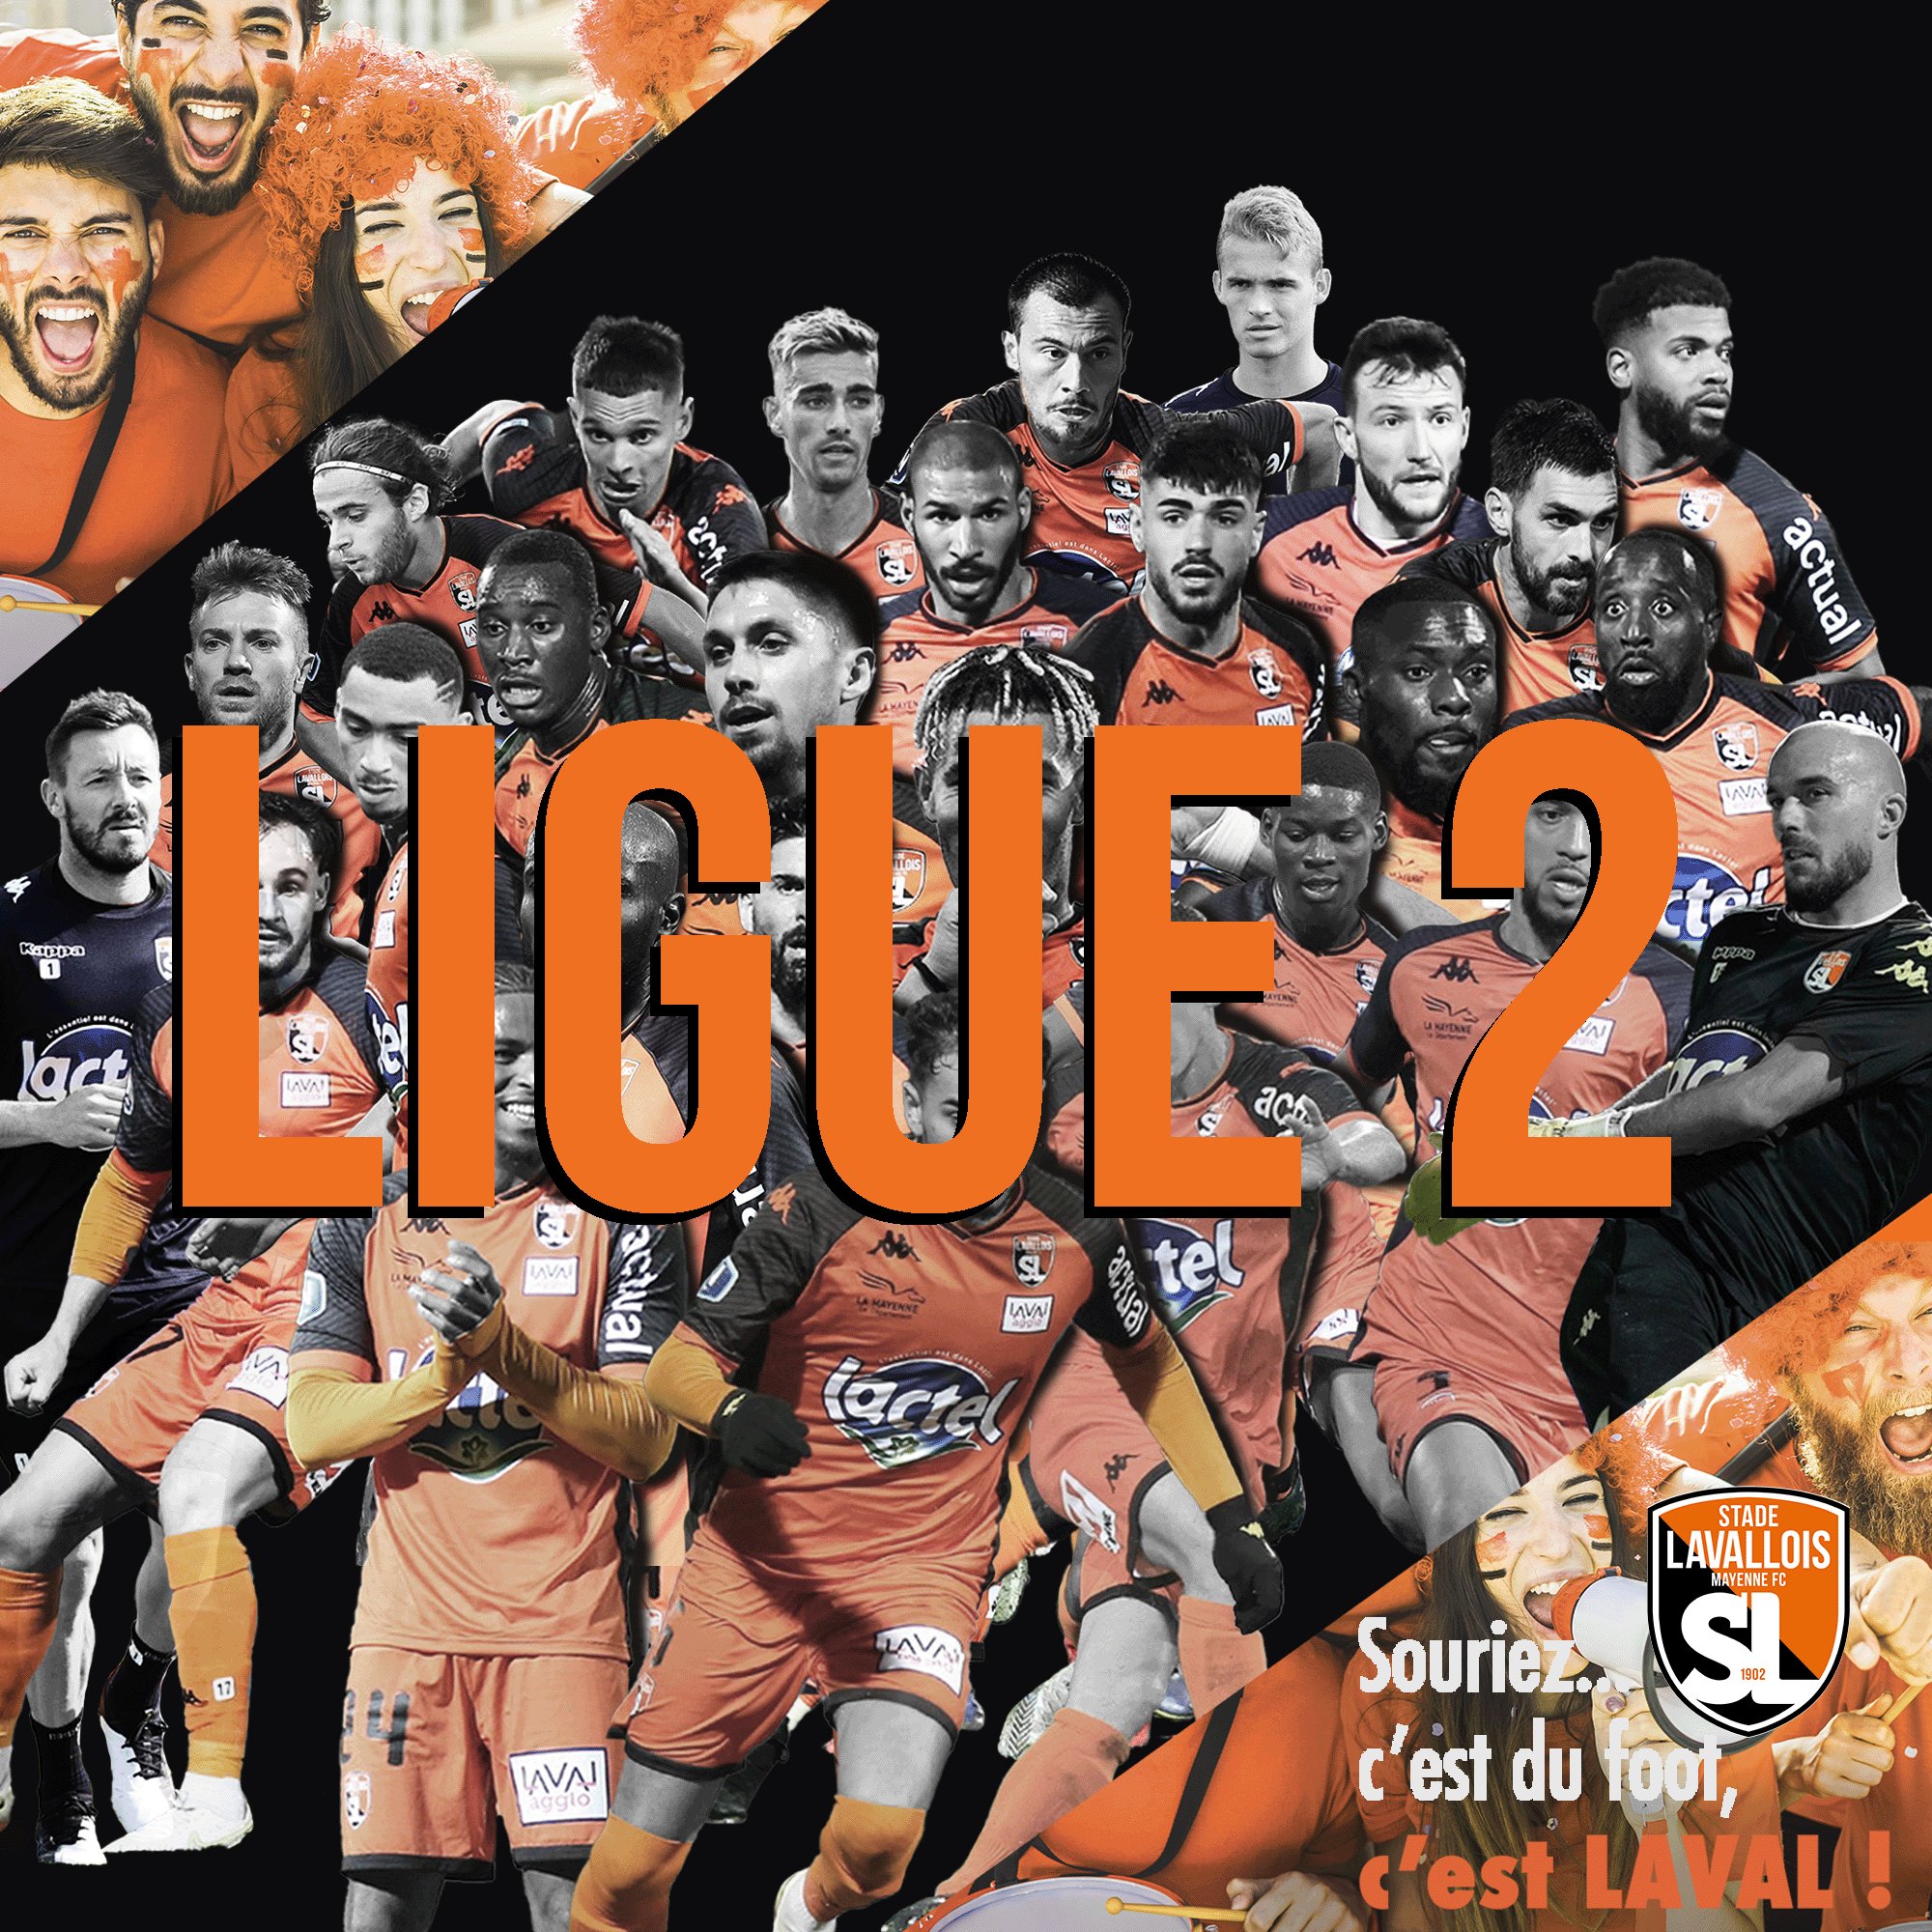 Stade Lavallois on Twitter: "🤩 𝑳𝒆 𝑺𝒕𝒂𝒅𝒆 𝑳𝒂𝒗𝒂𝒍𝒍𝒐𝒊𝒔 𝑴𝑭𝑪  𝒅𝒆 𝒓𝒆𝒕𝒐𝒖𝒓 𝒆𝒏 @Ligue2BKT 🔥 🧡🖤 https://t.co/zCAIUJnK2g" / Twitter